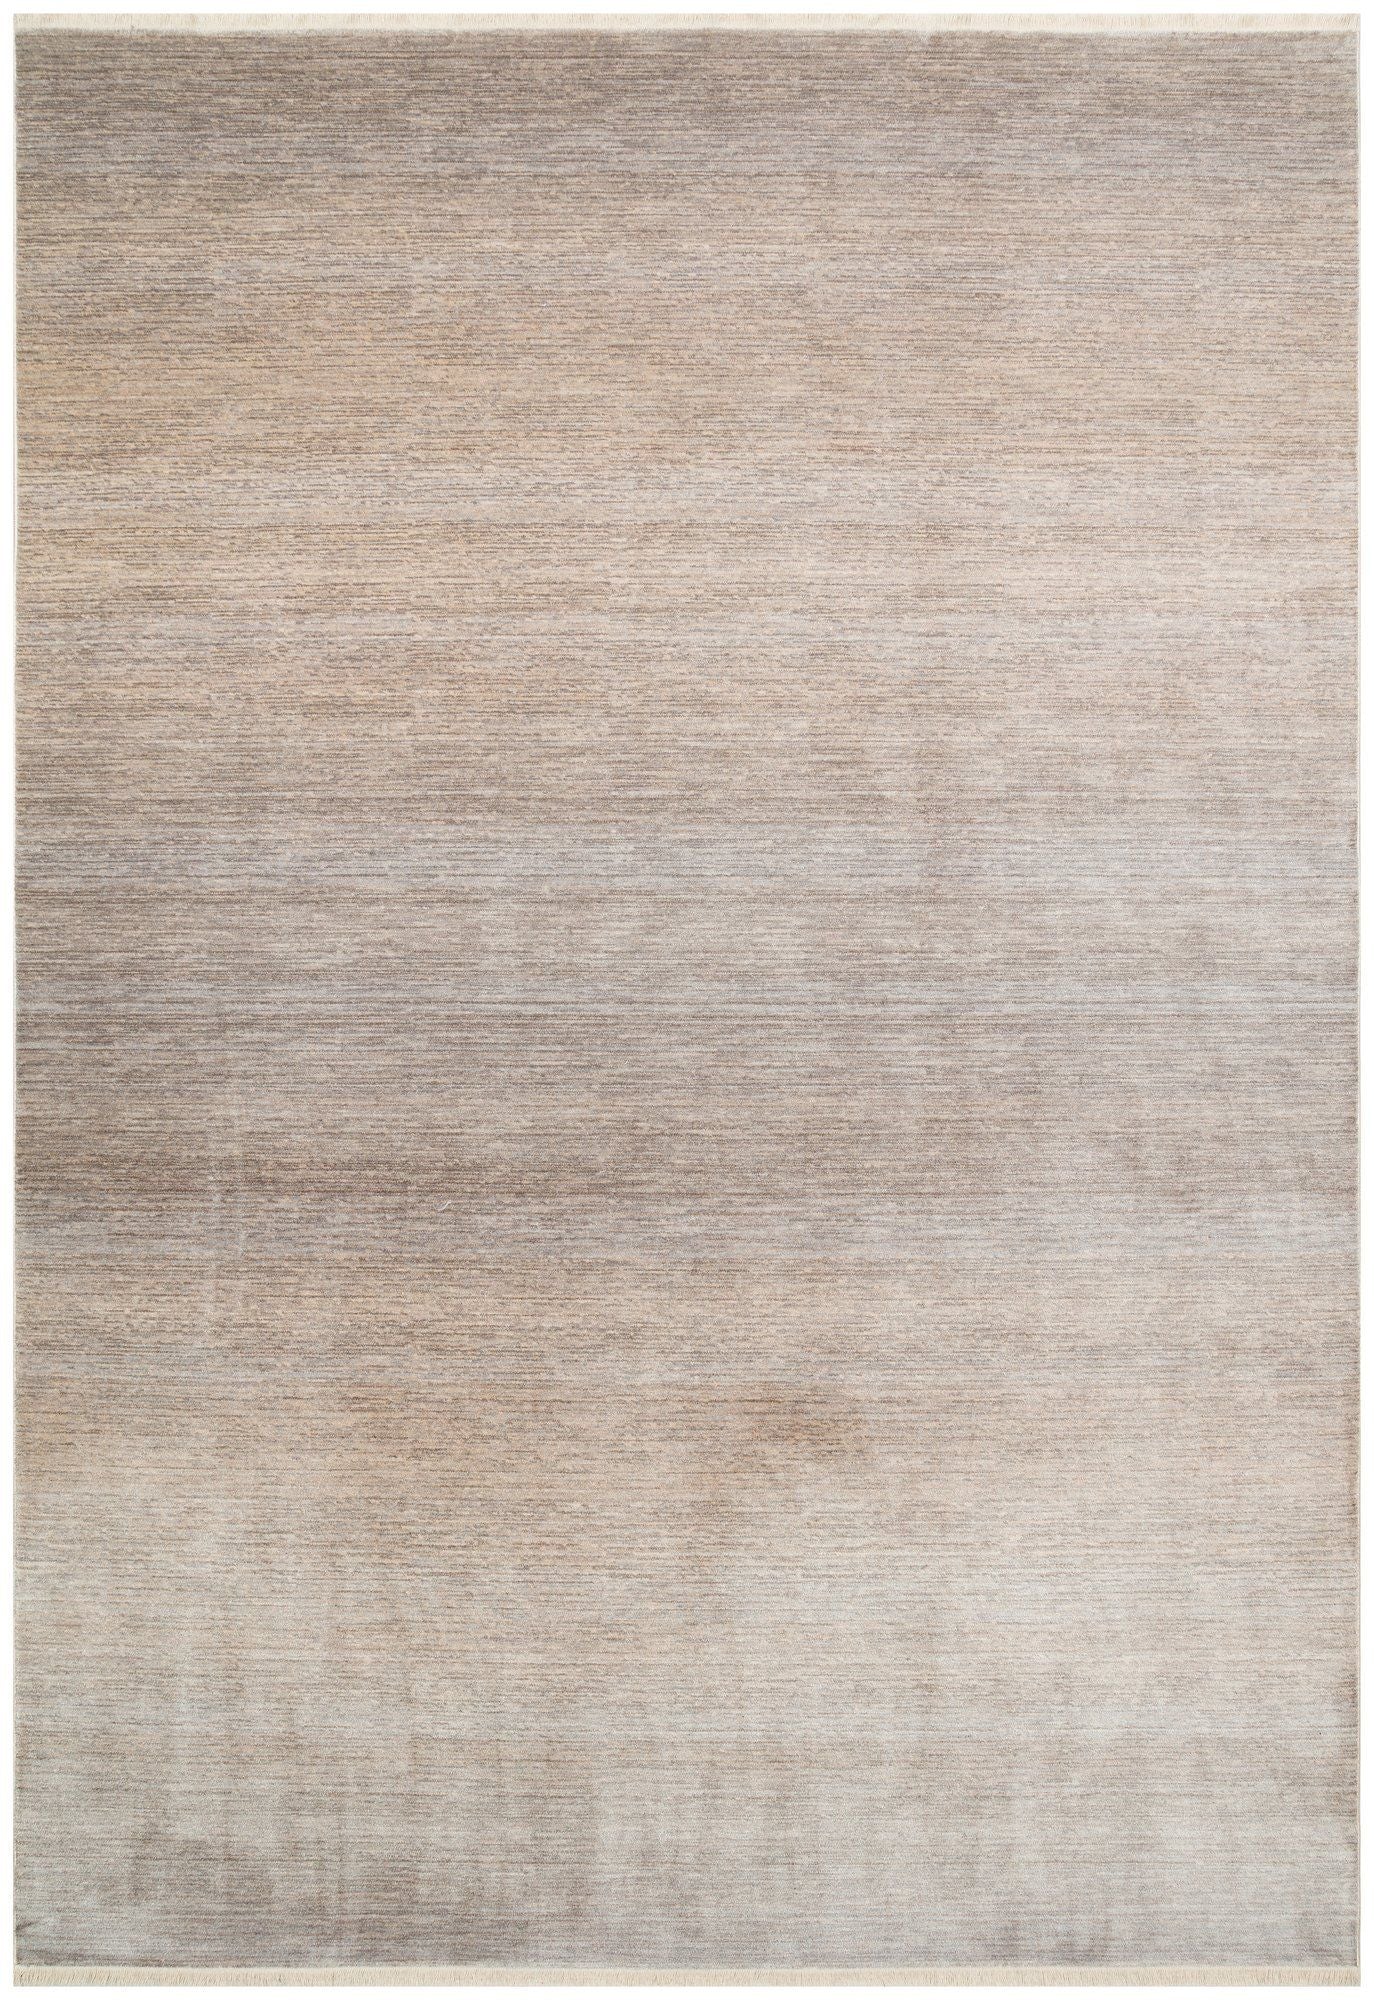 Pta - Sølv, Beige - Tæppe (160 x 230)